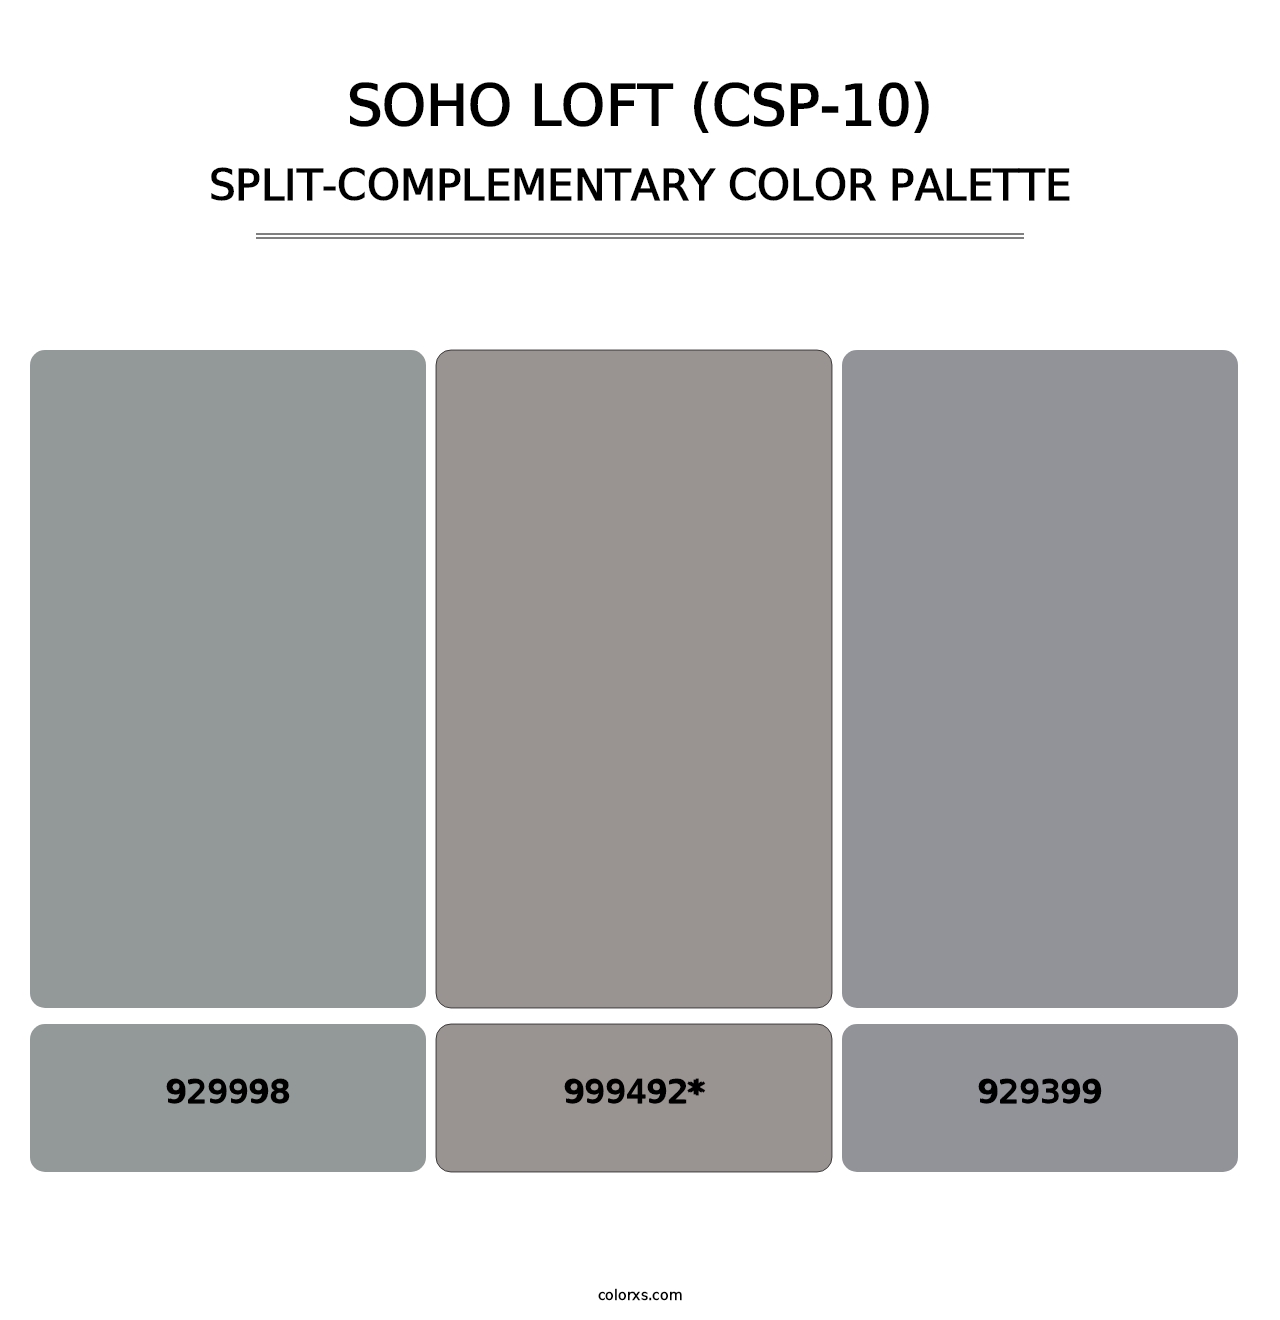 Soho Loft (CSP-10) - Split-Complementary Color Palette